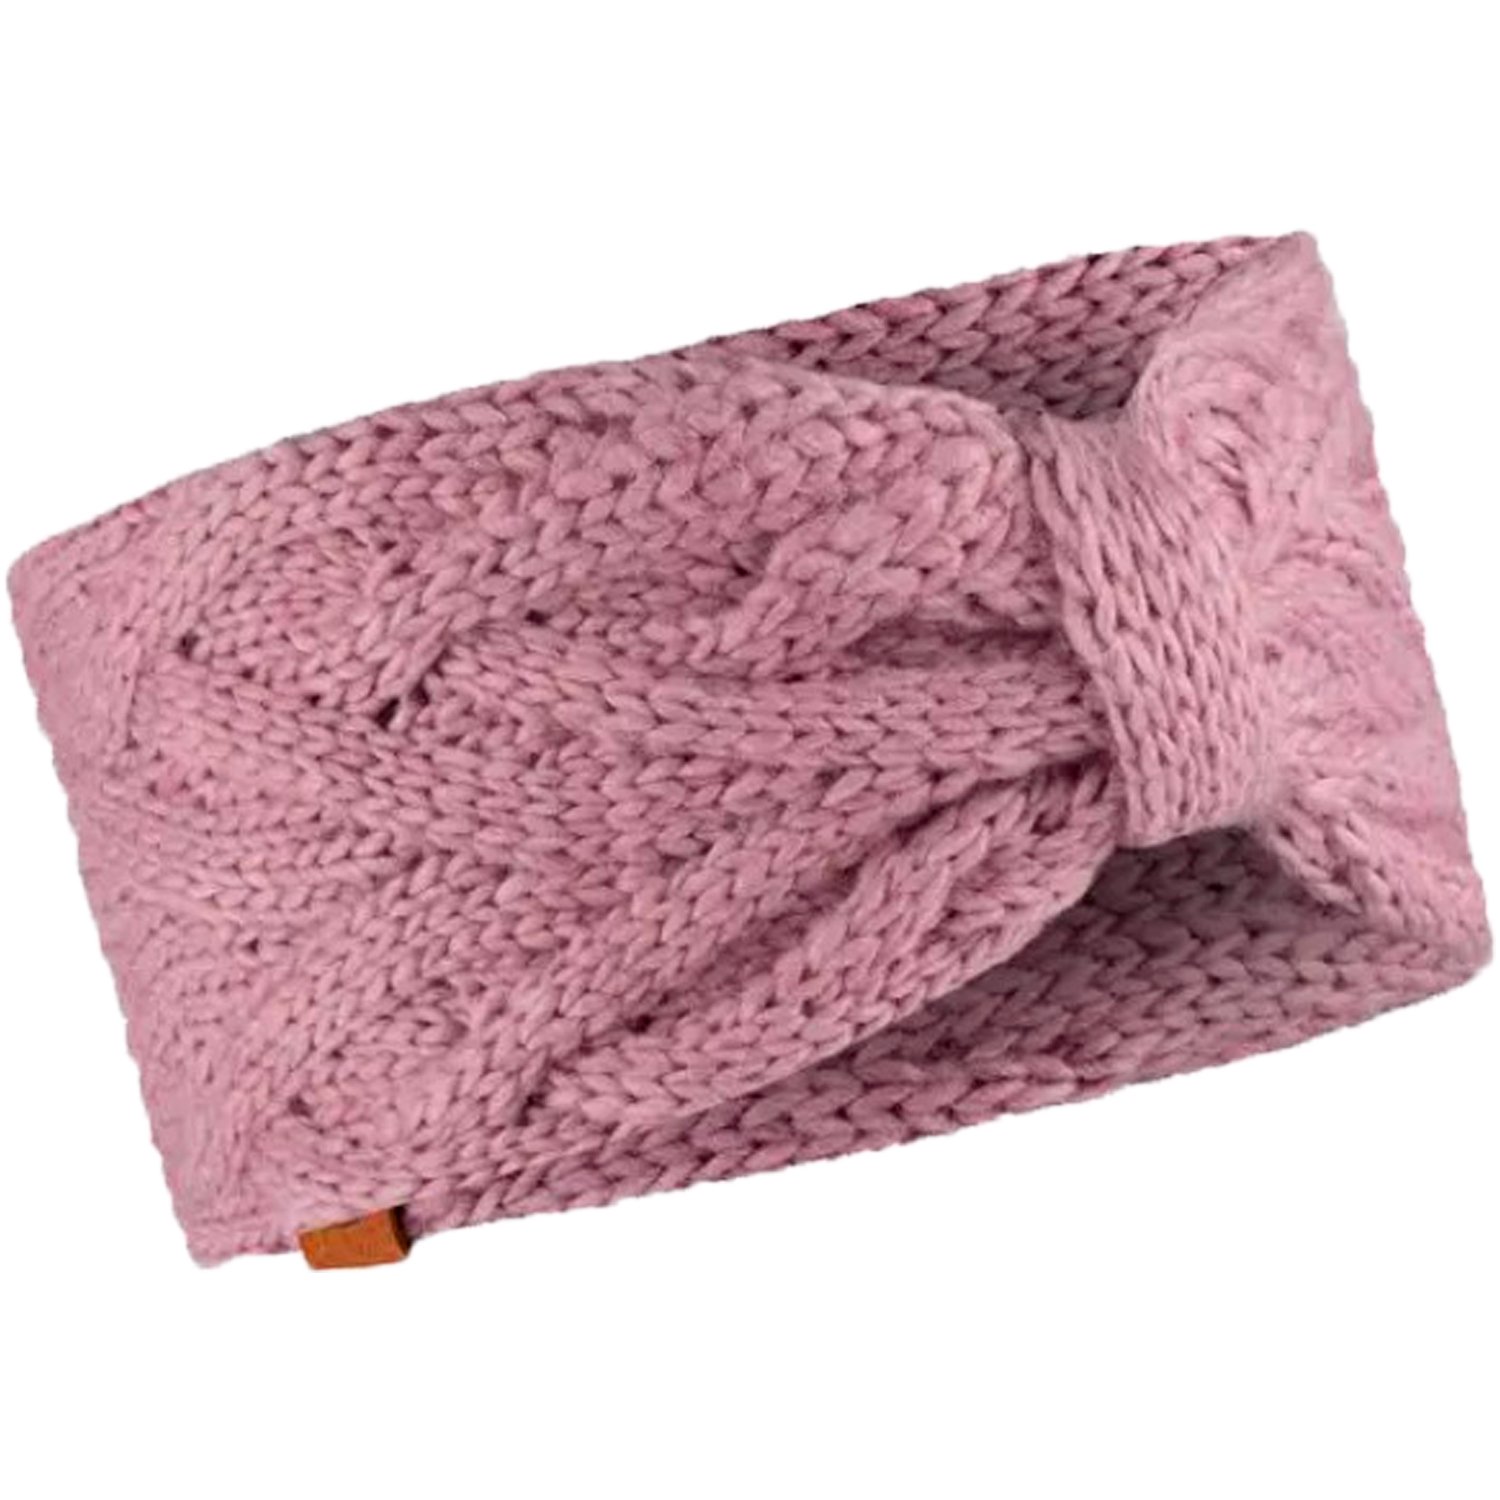 Повязка Buff Knitted Headband Caryn Rosé, женская, 2022-23, розовый, 126465.512.10.00 повязка buff knitted headband caryn caryn dahlia us one size 126465 628 10 00